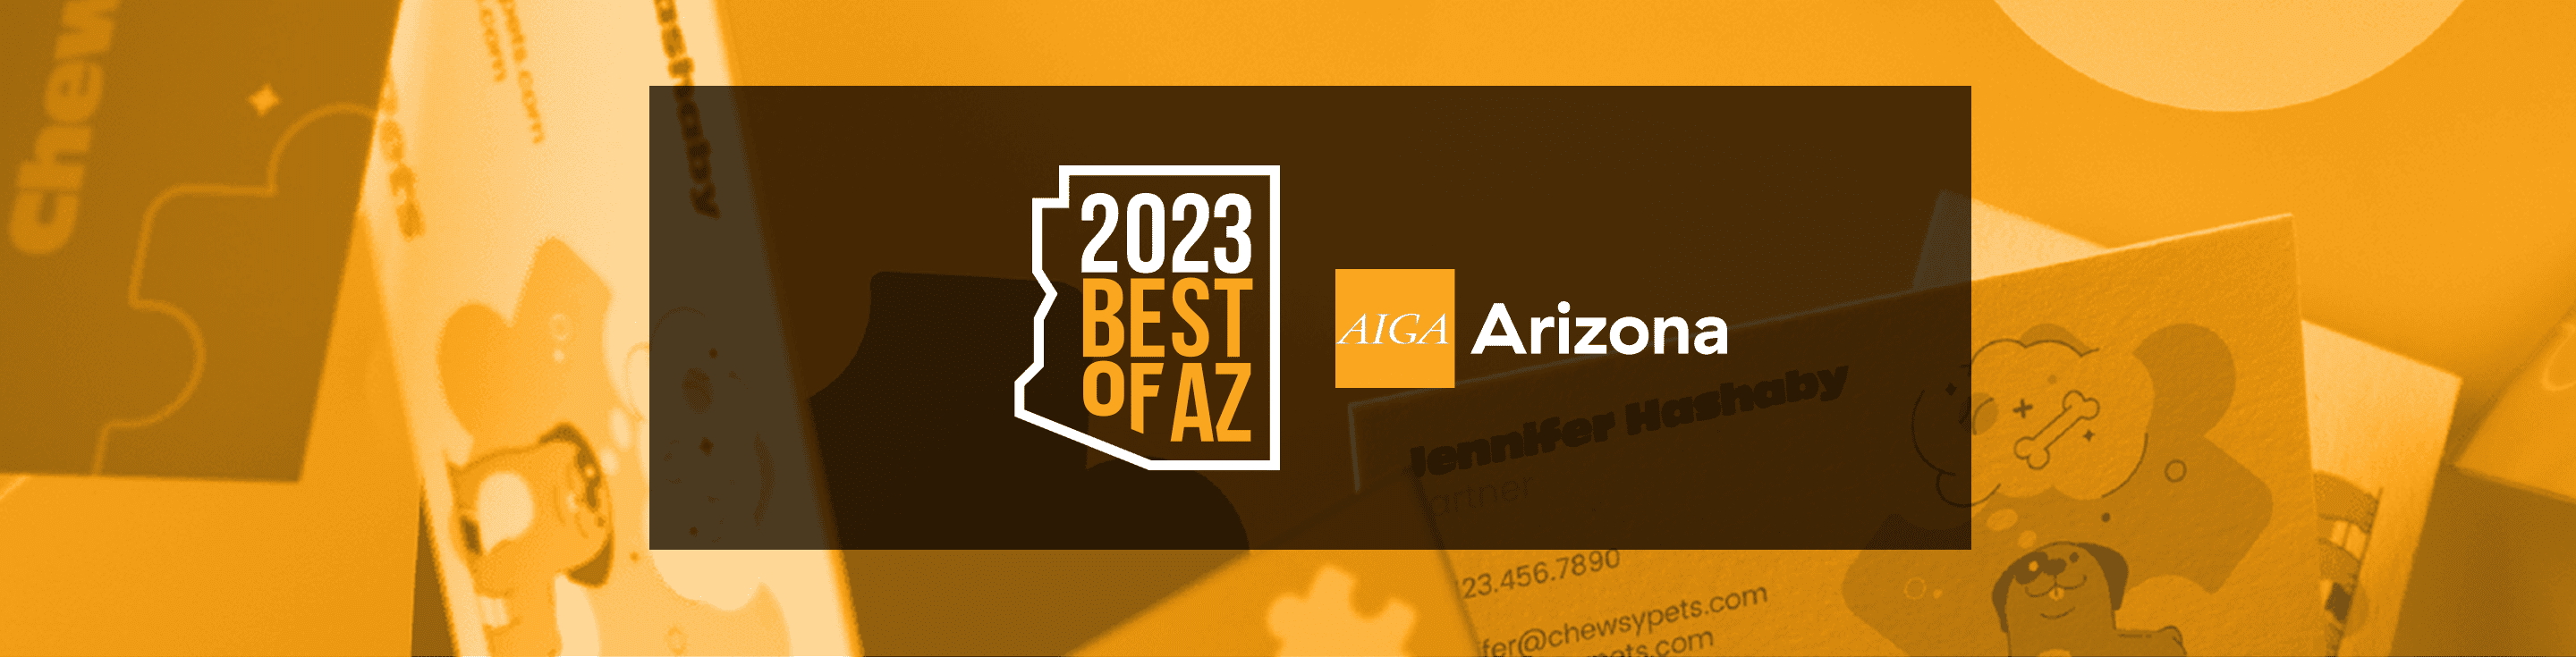 AIGA-AZ Best Of 2023